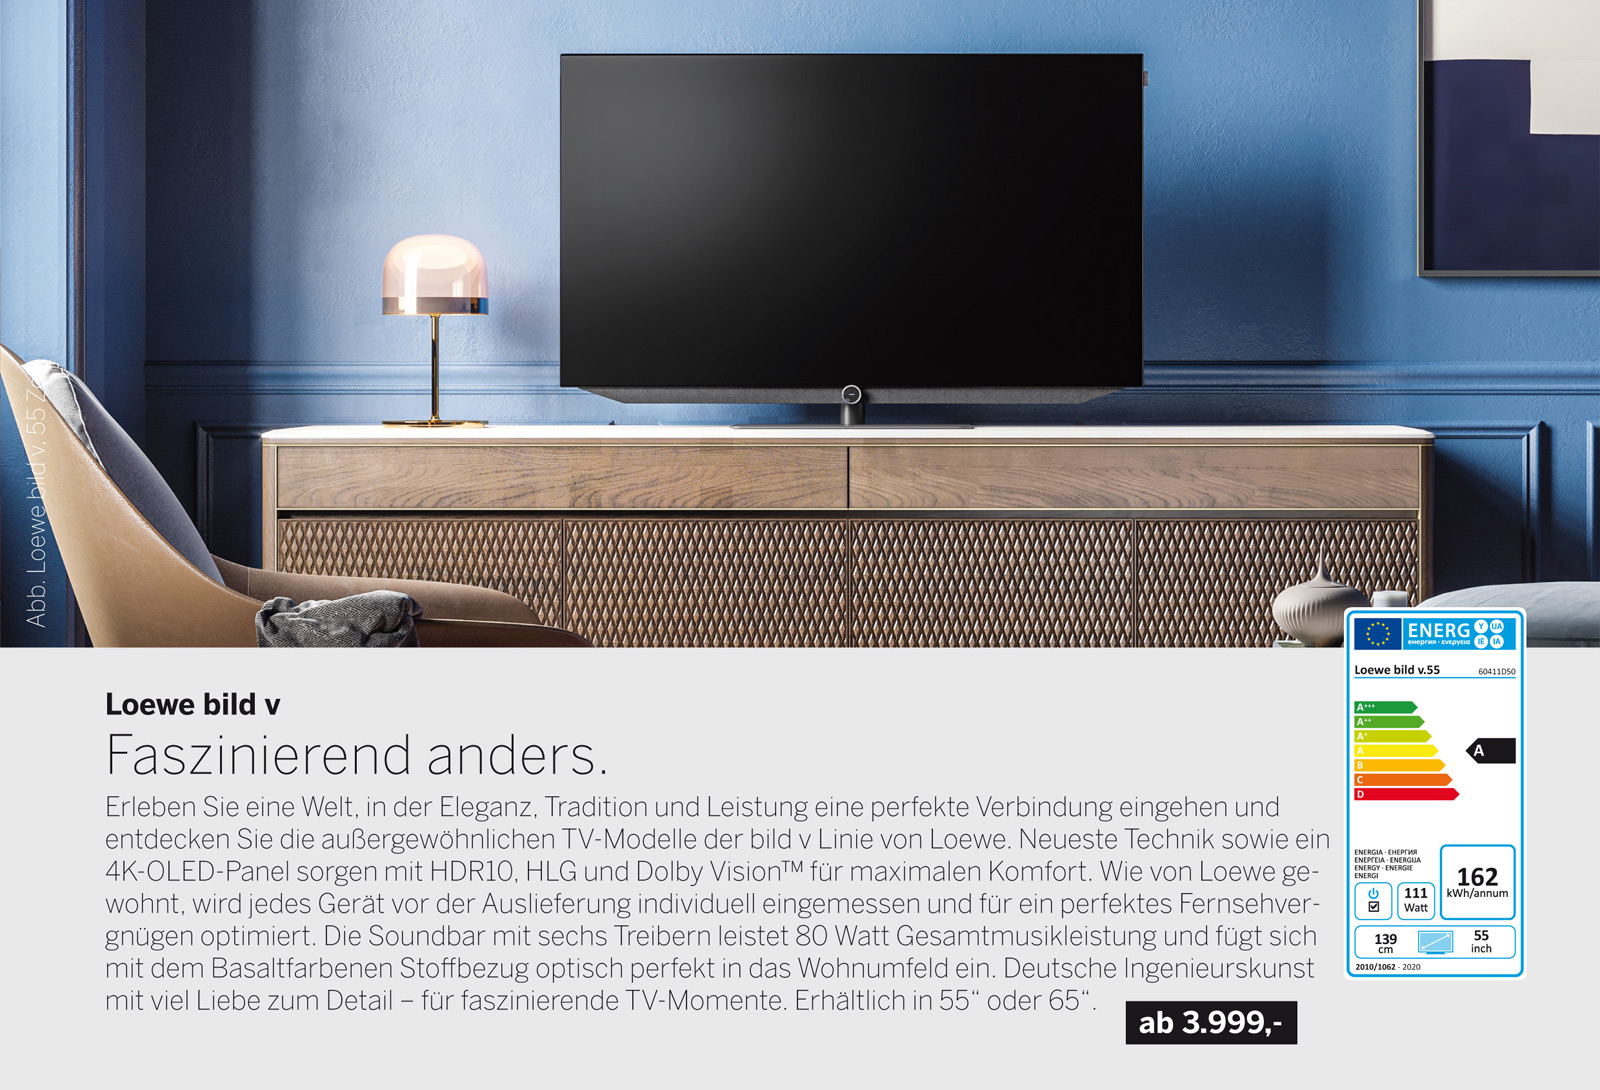 Der neue Loewe bild v Smart-TV begeistert mit integrierter Festplatte, 4K-OLED, HDR10, HLG & Dolby Vision™. Für ein perfektes Fernsehvergnügen optimiert.